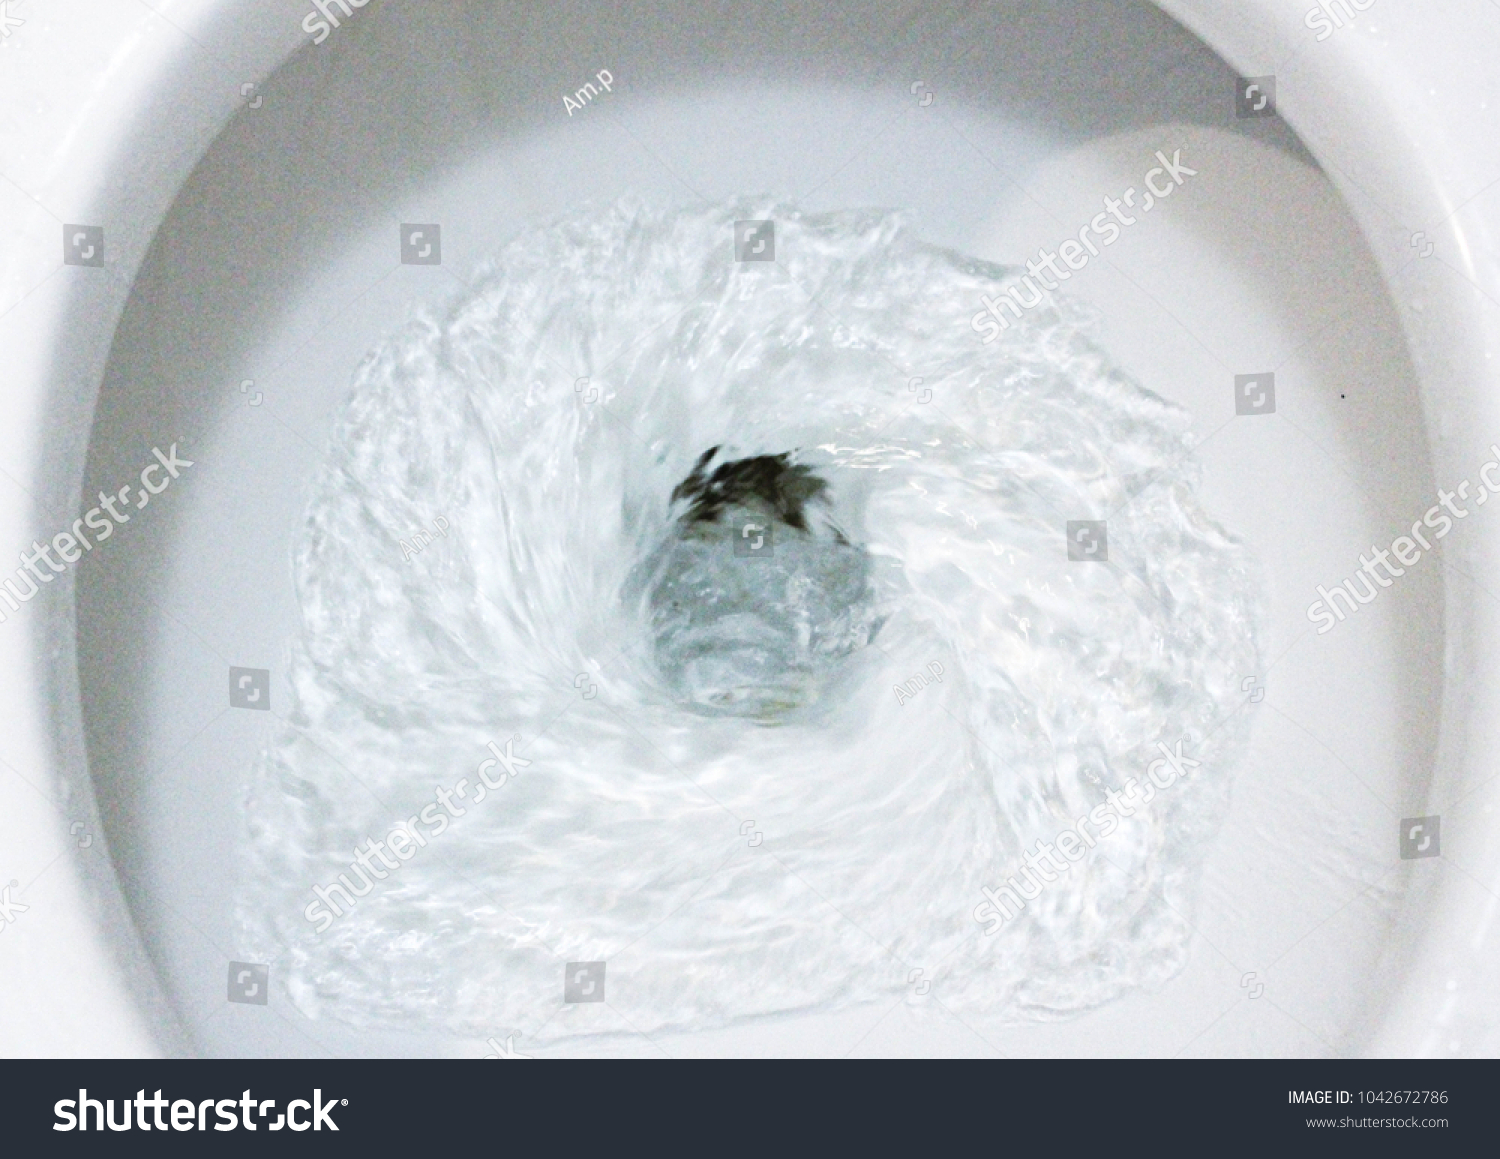 Toilet, Flushing Water, close up #1042672786